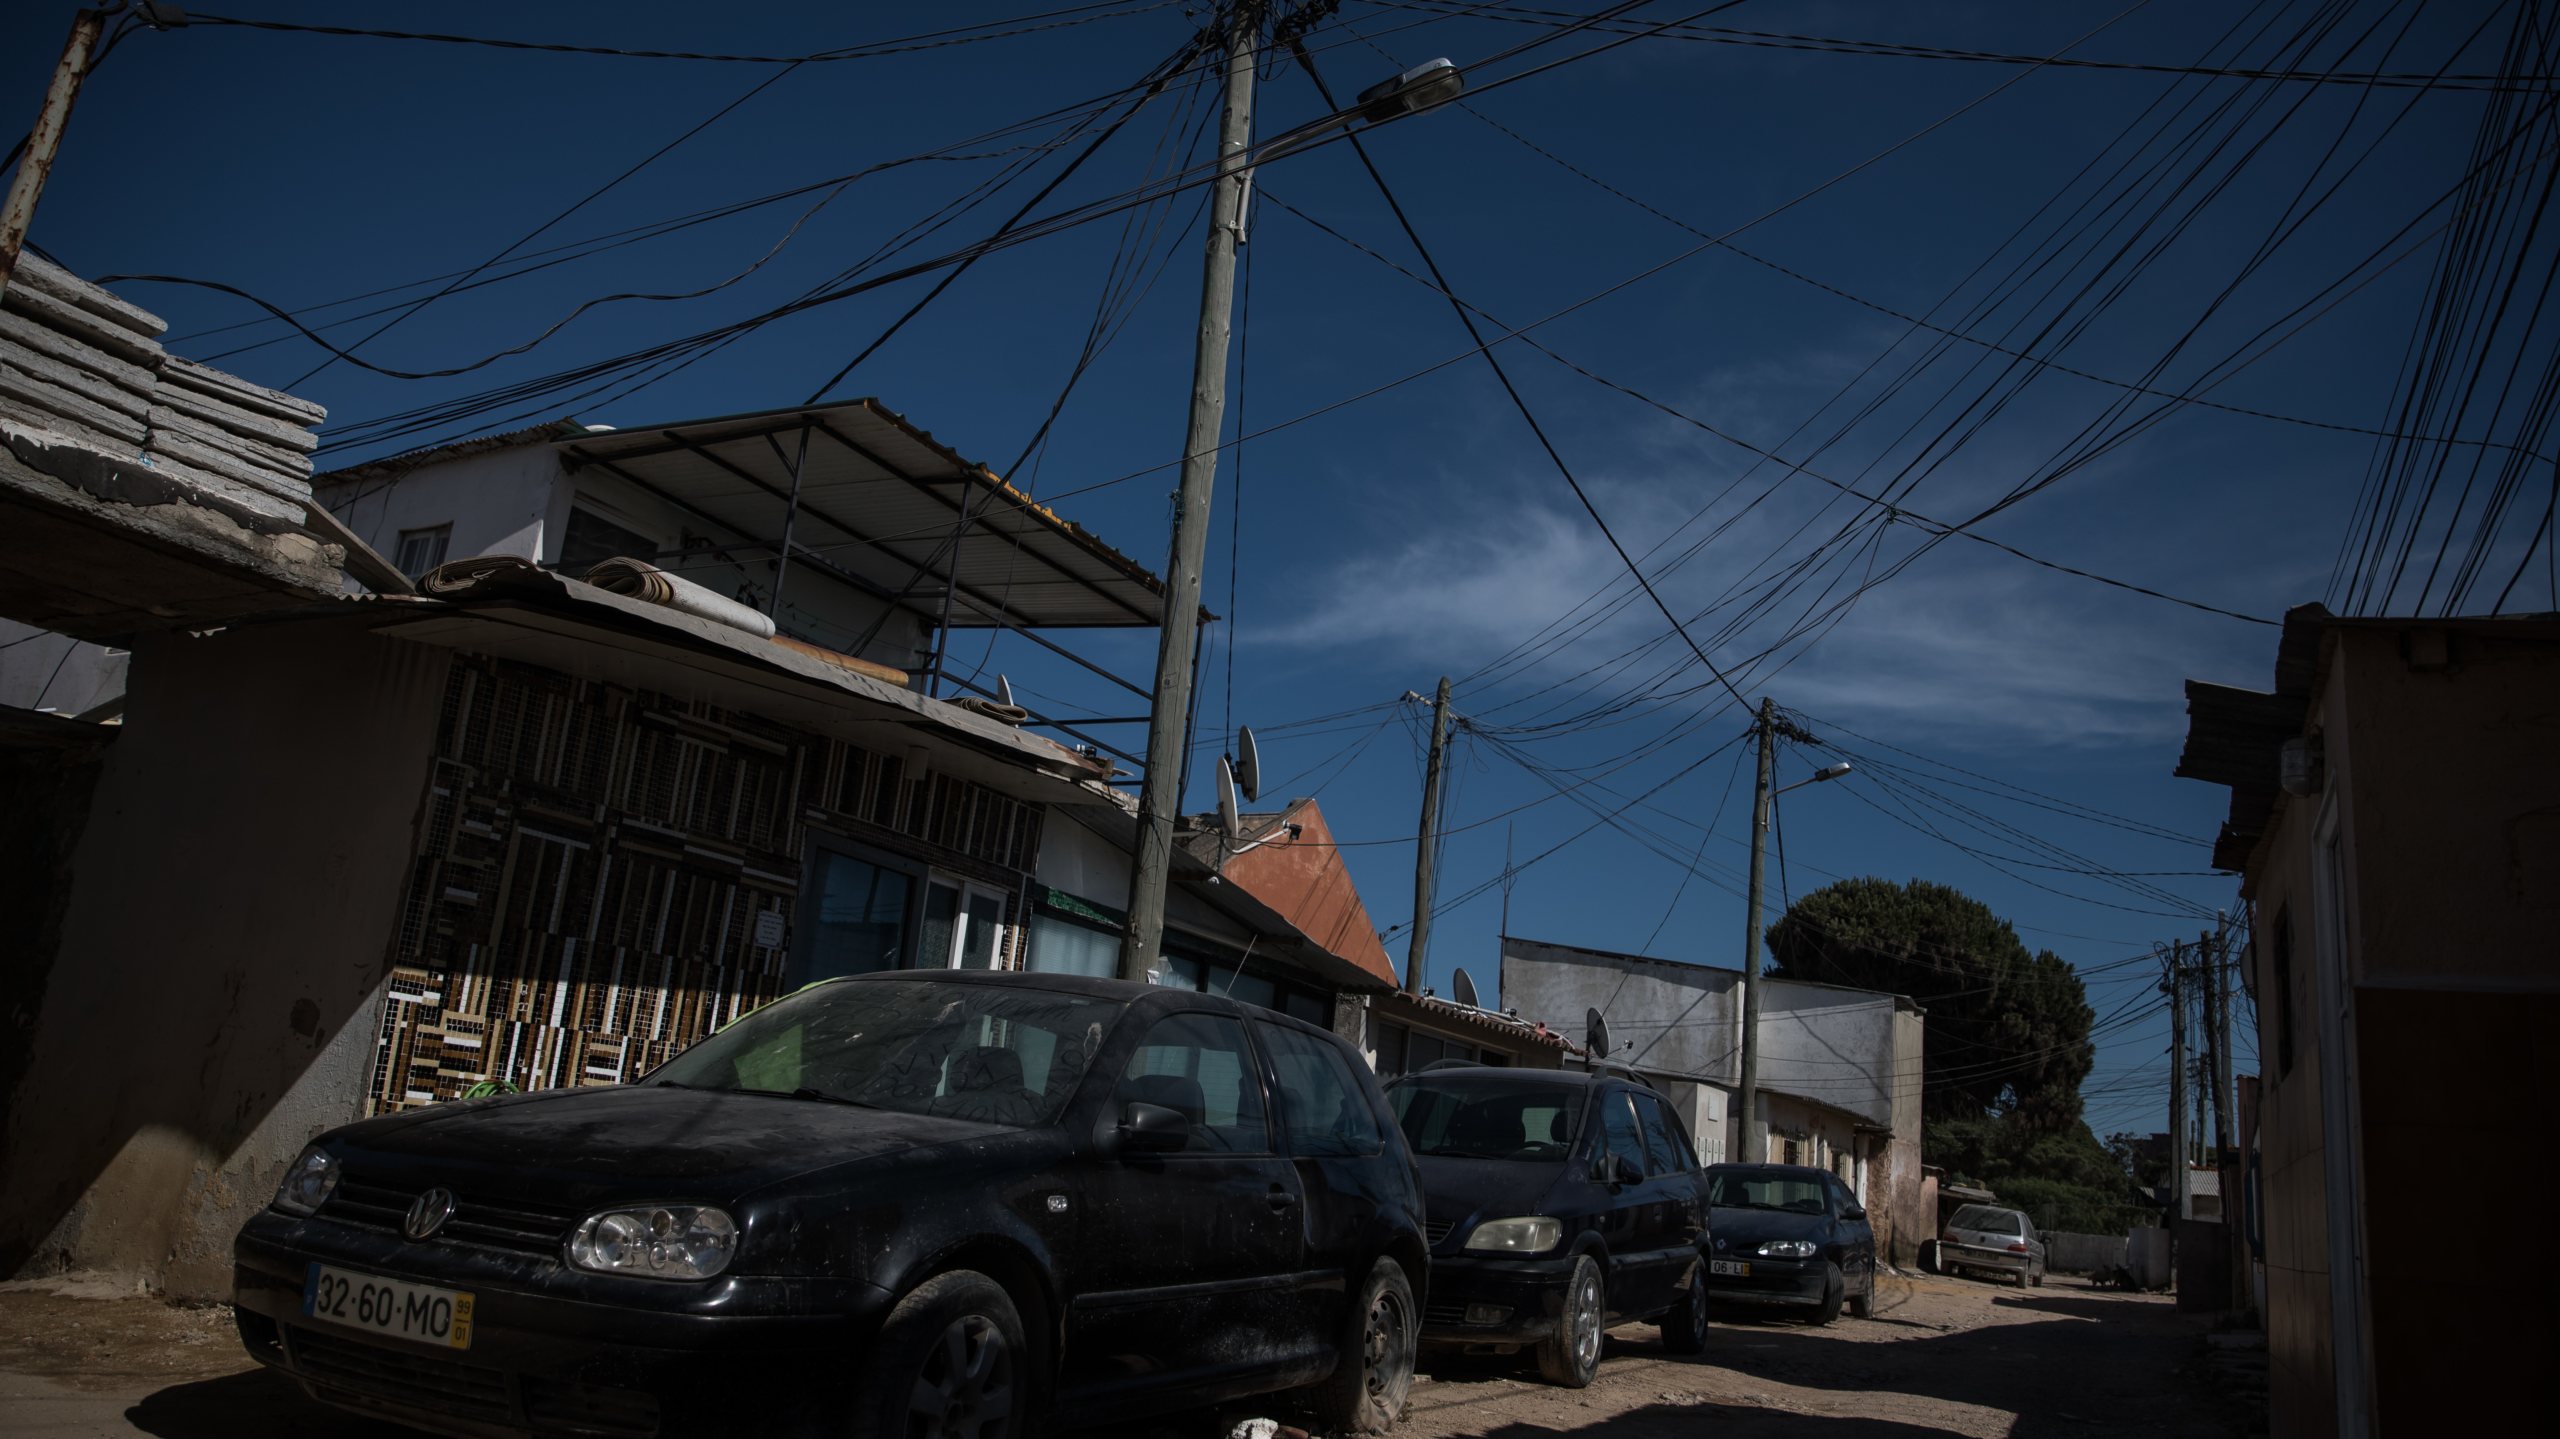 O 2.º Torrão, na freguesia da Trafaria, é um bairro precário do concelho de Almada, distrito de Setúbal, com mais de três mil pessoas, que há cerca de 40 anos se começou a formar ilegalmente, uma condição que se mantém, assim como as carências habitacionais